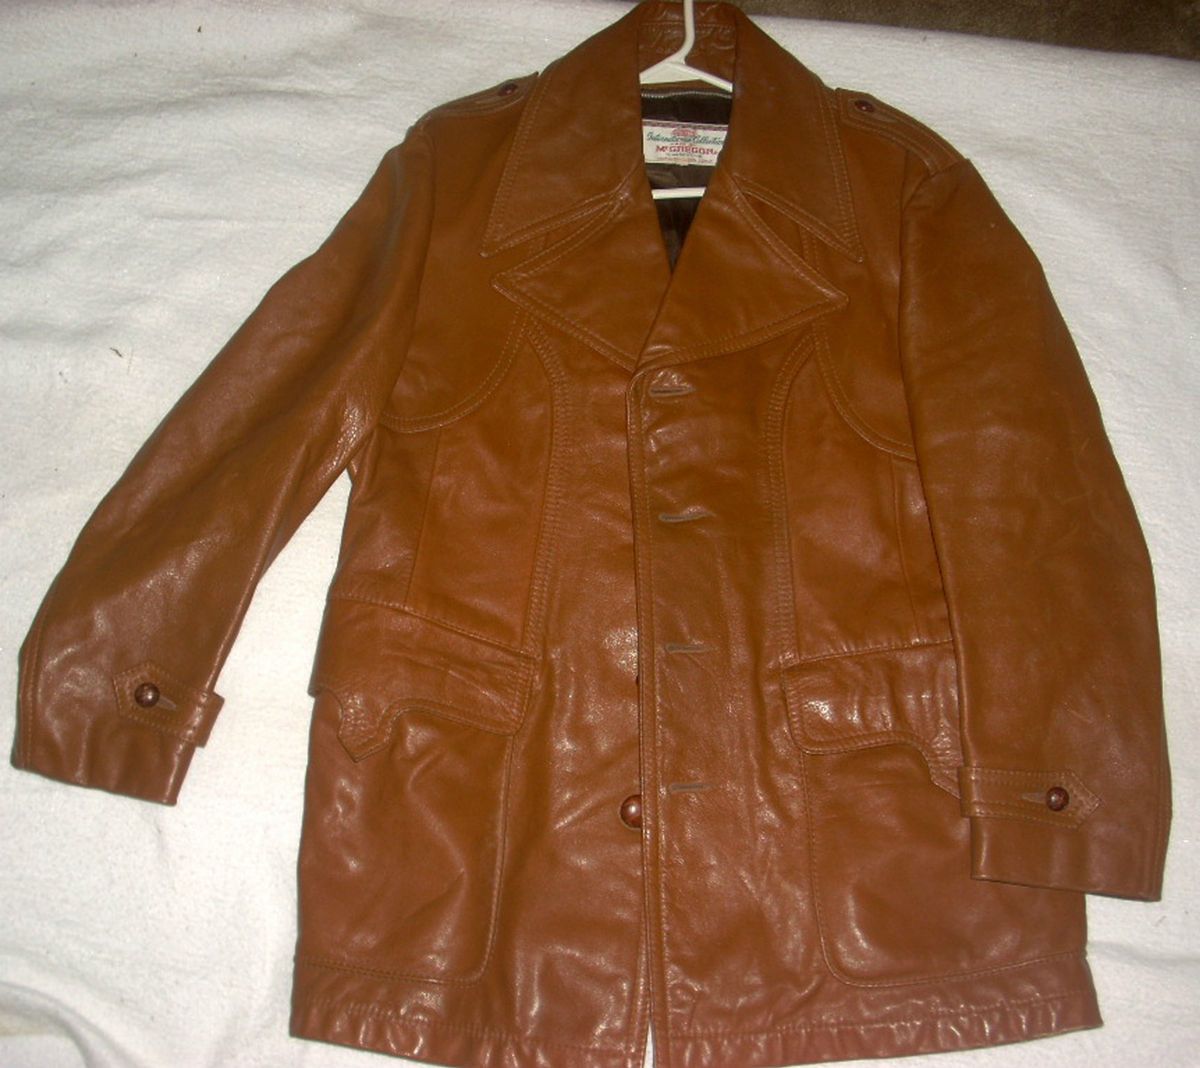 Vintage McGregor Brown Leather Jacket Coat Size 40L International